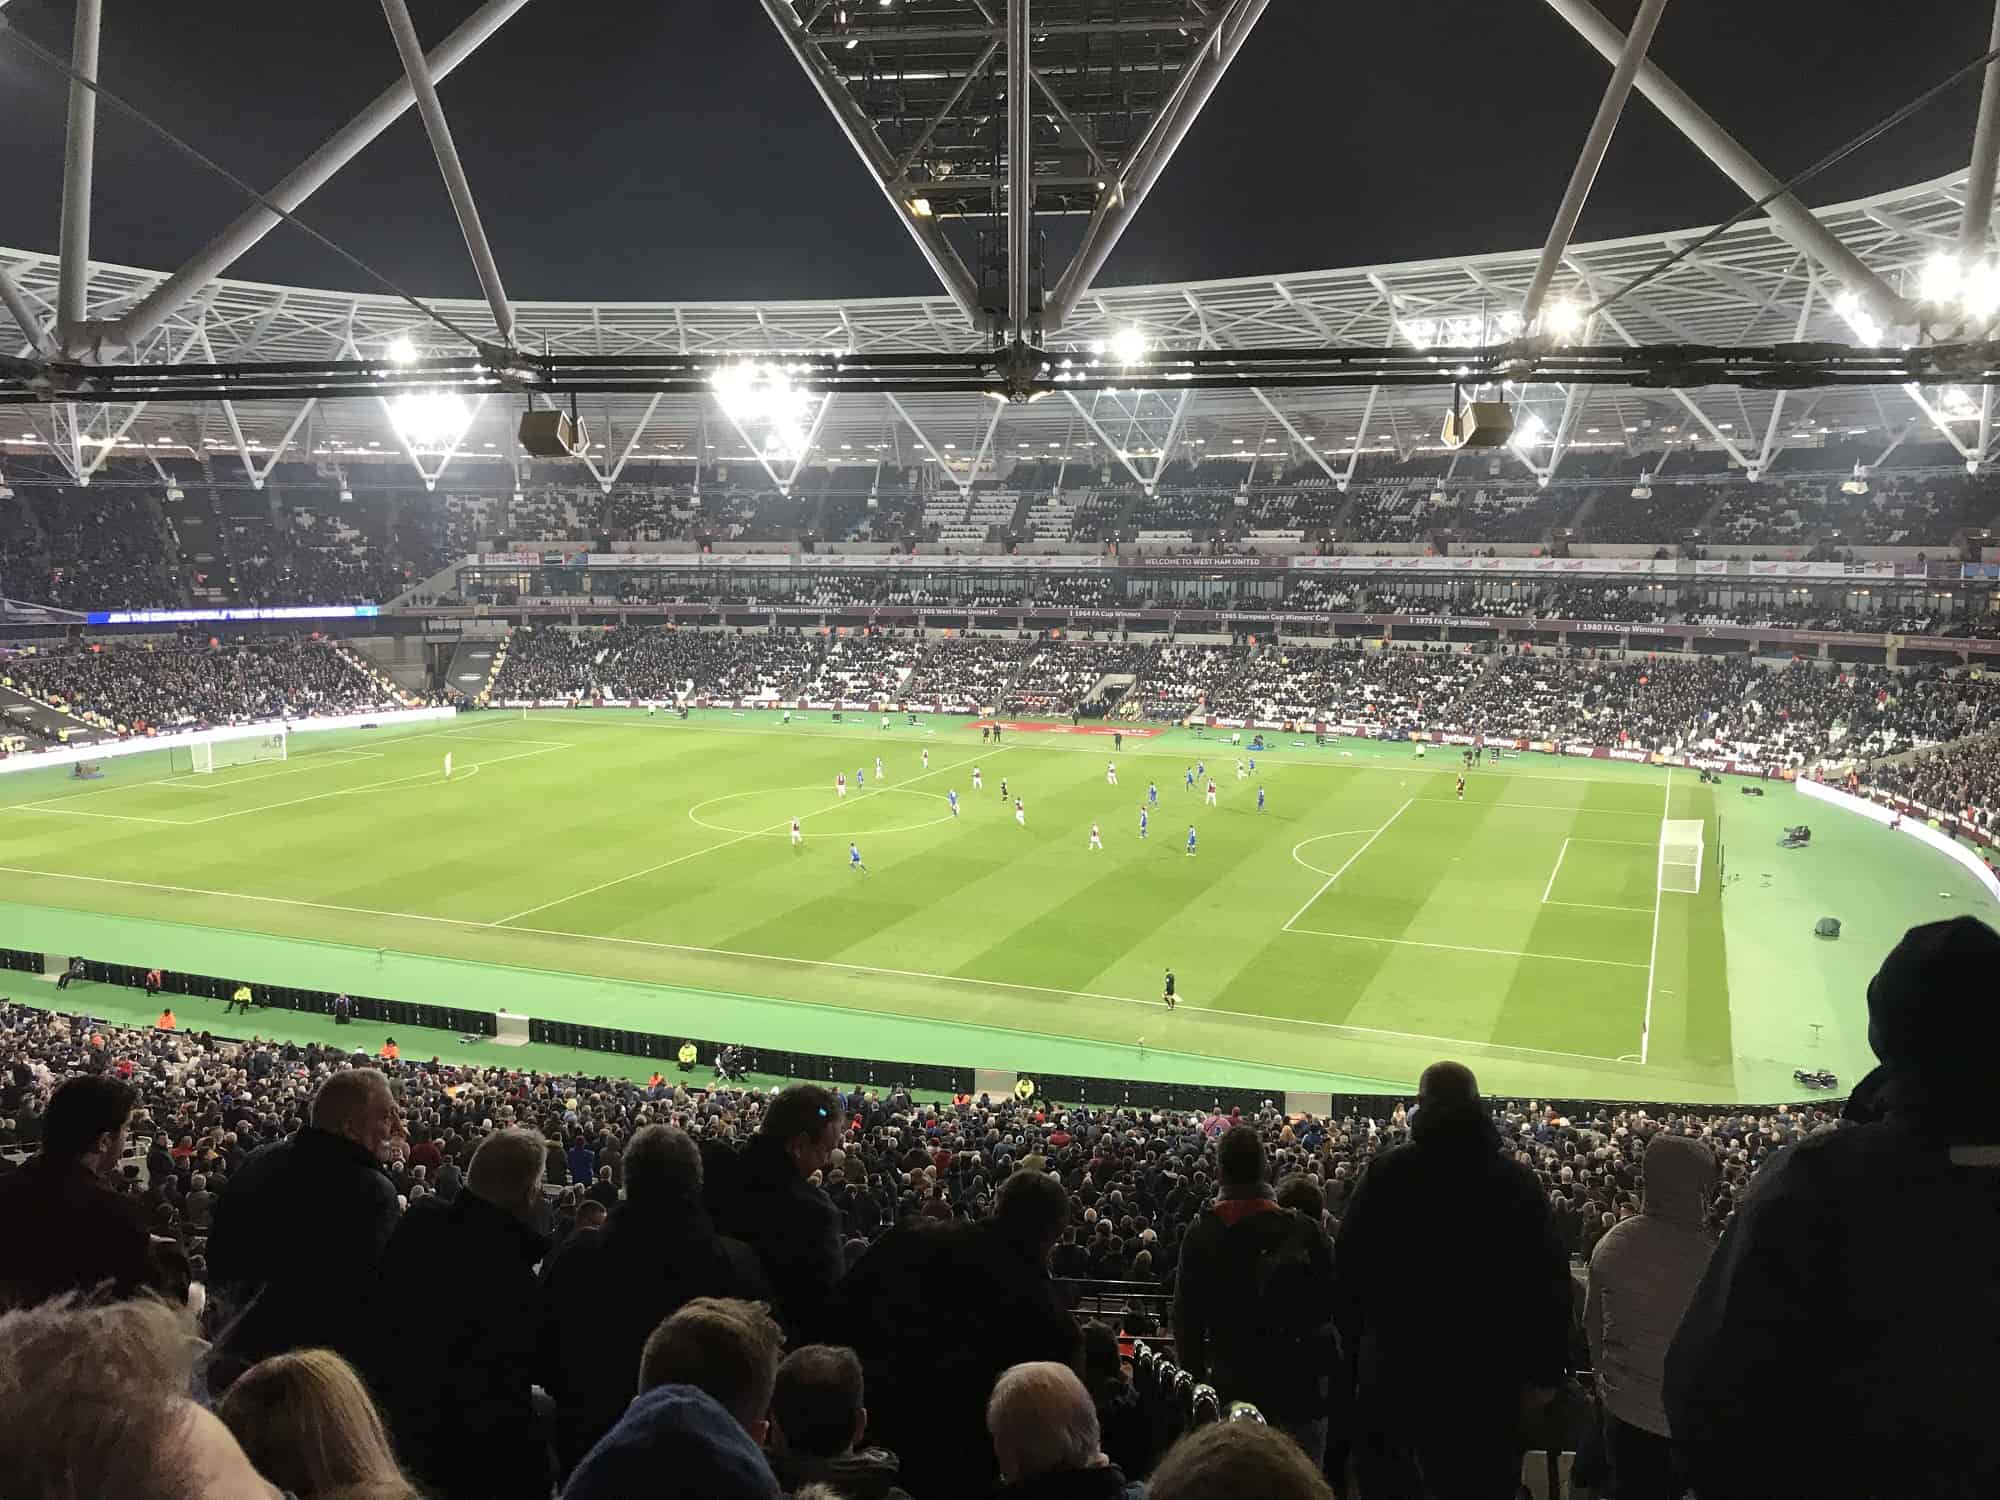 Premier League Live: London Olympic Stadium som er hjemmebane for West Ham United kan være et mål for studieturen til London dersom det blir mulig å reise vinteren 2021-22. Her fra en PL-kamp mot Leicester.